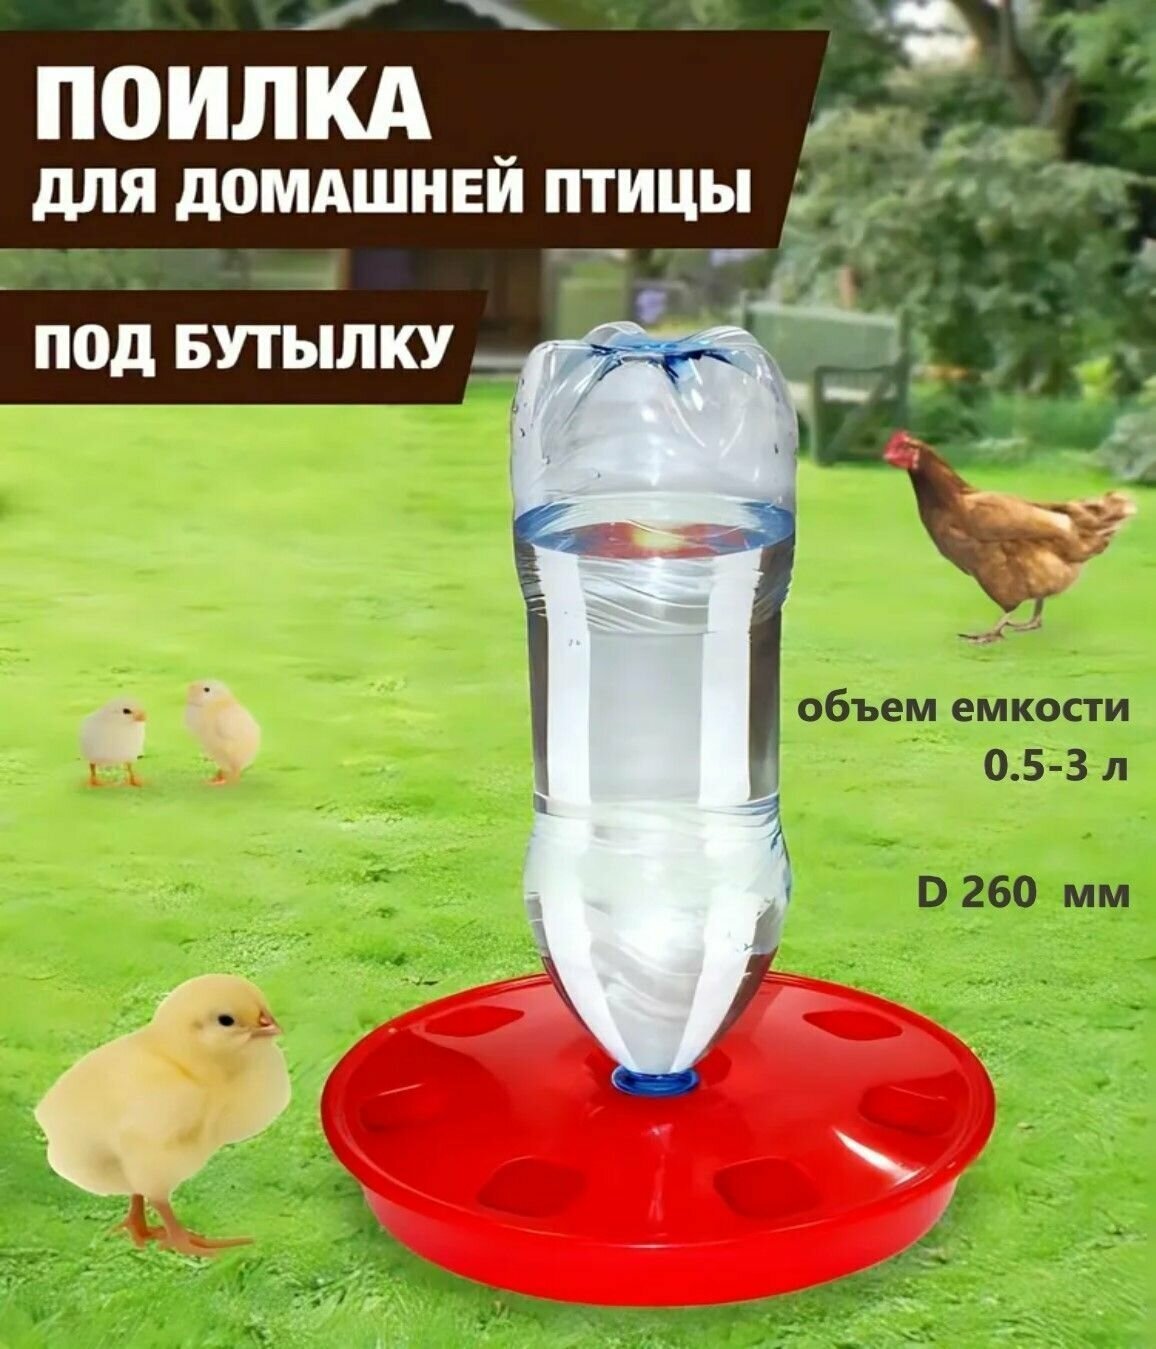 Поилка для домашней птицы под бутылку (d 260мм) объемом от 0,5 до 3 л, для выращивания домашних птиц: кур несушек, индеек, цесарок, цыплят, уток, гусей